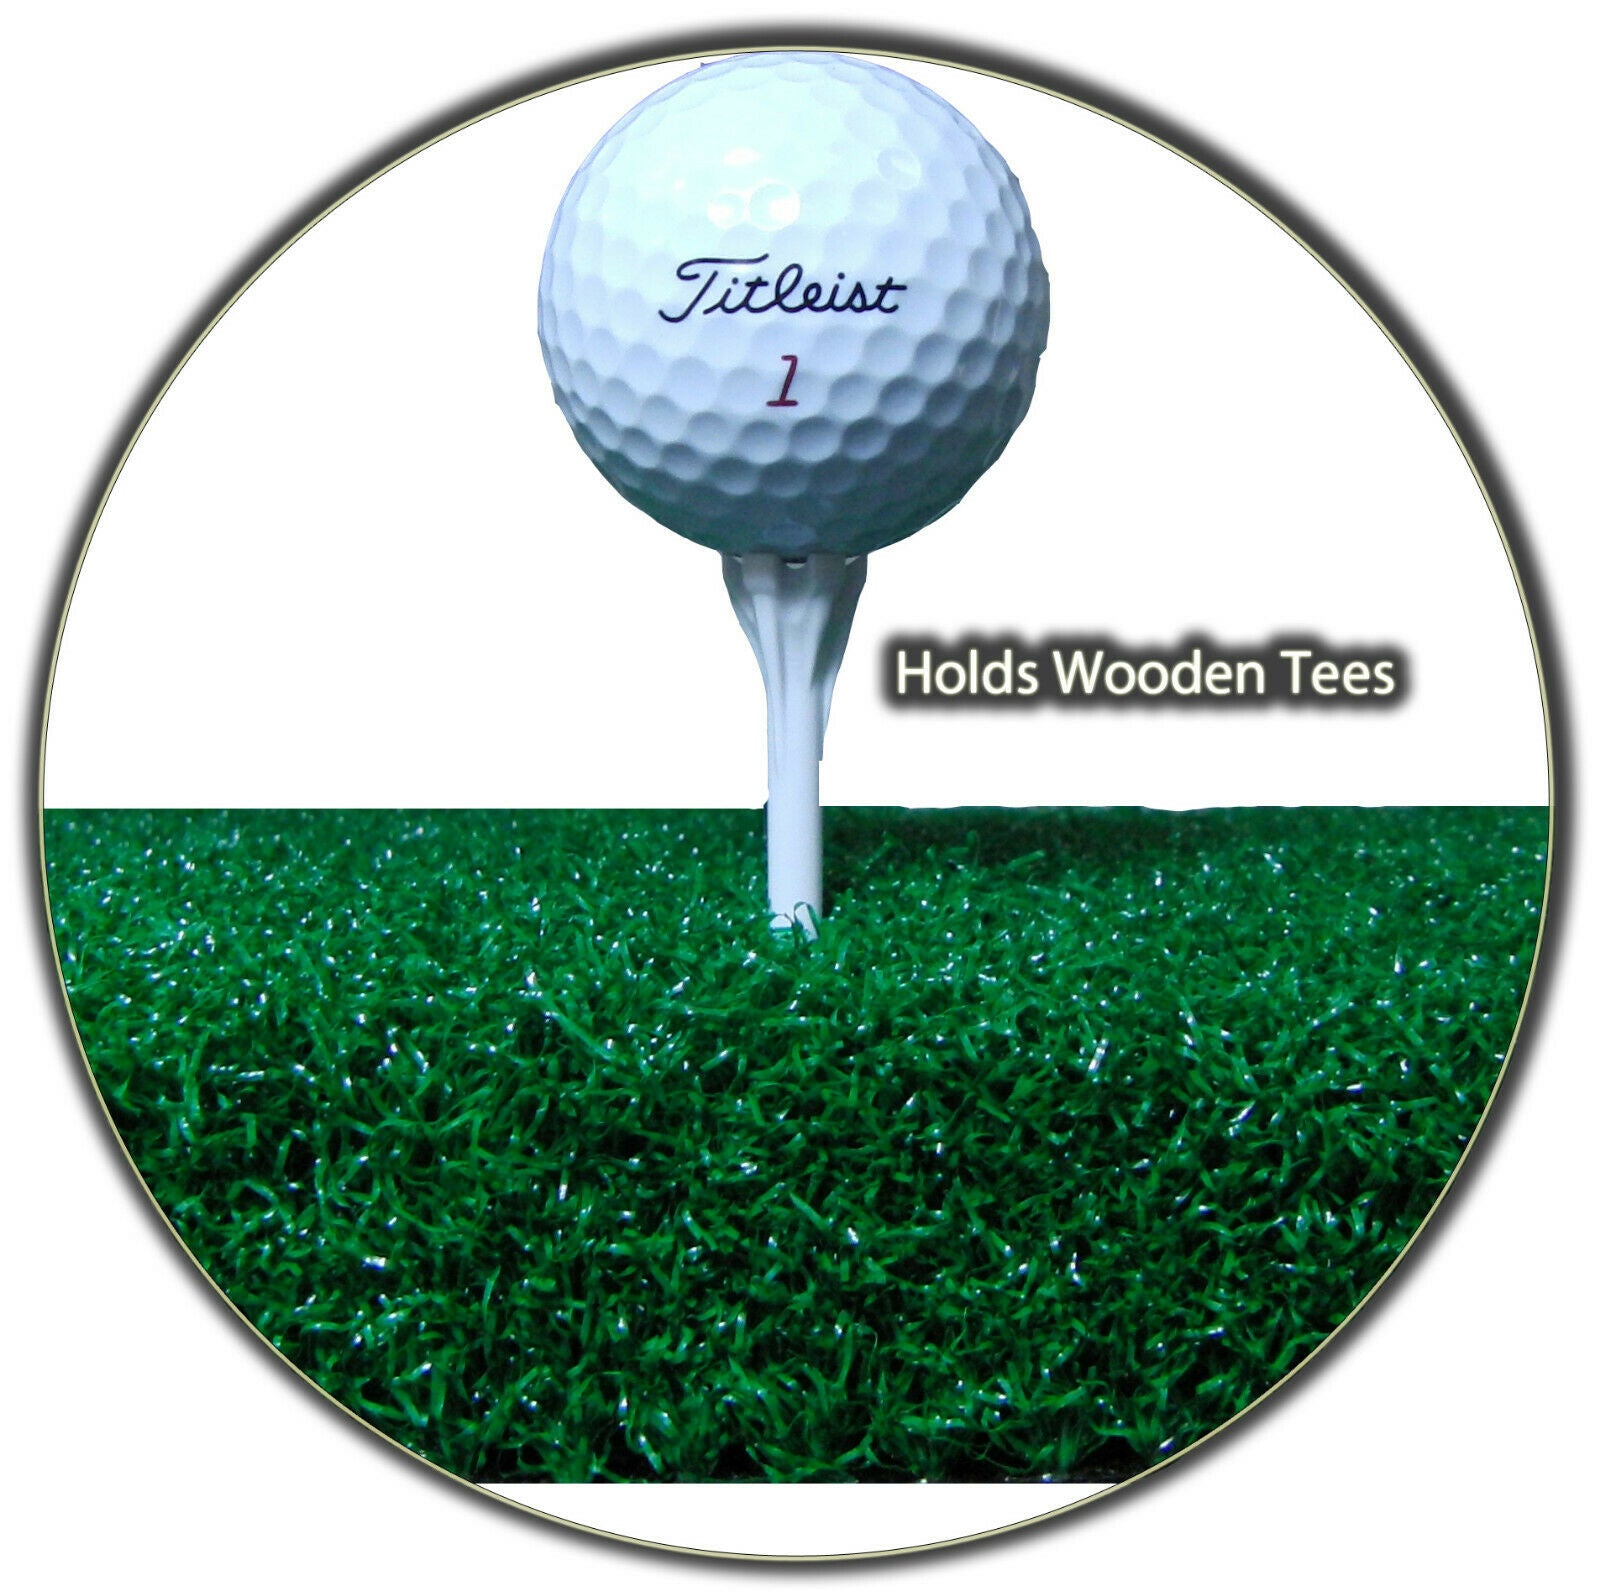 5' x 5' Elite Grass Golf Mat with Ball Tray - Holds Wooden Tee Golf Mat